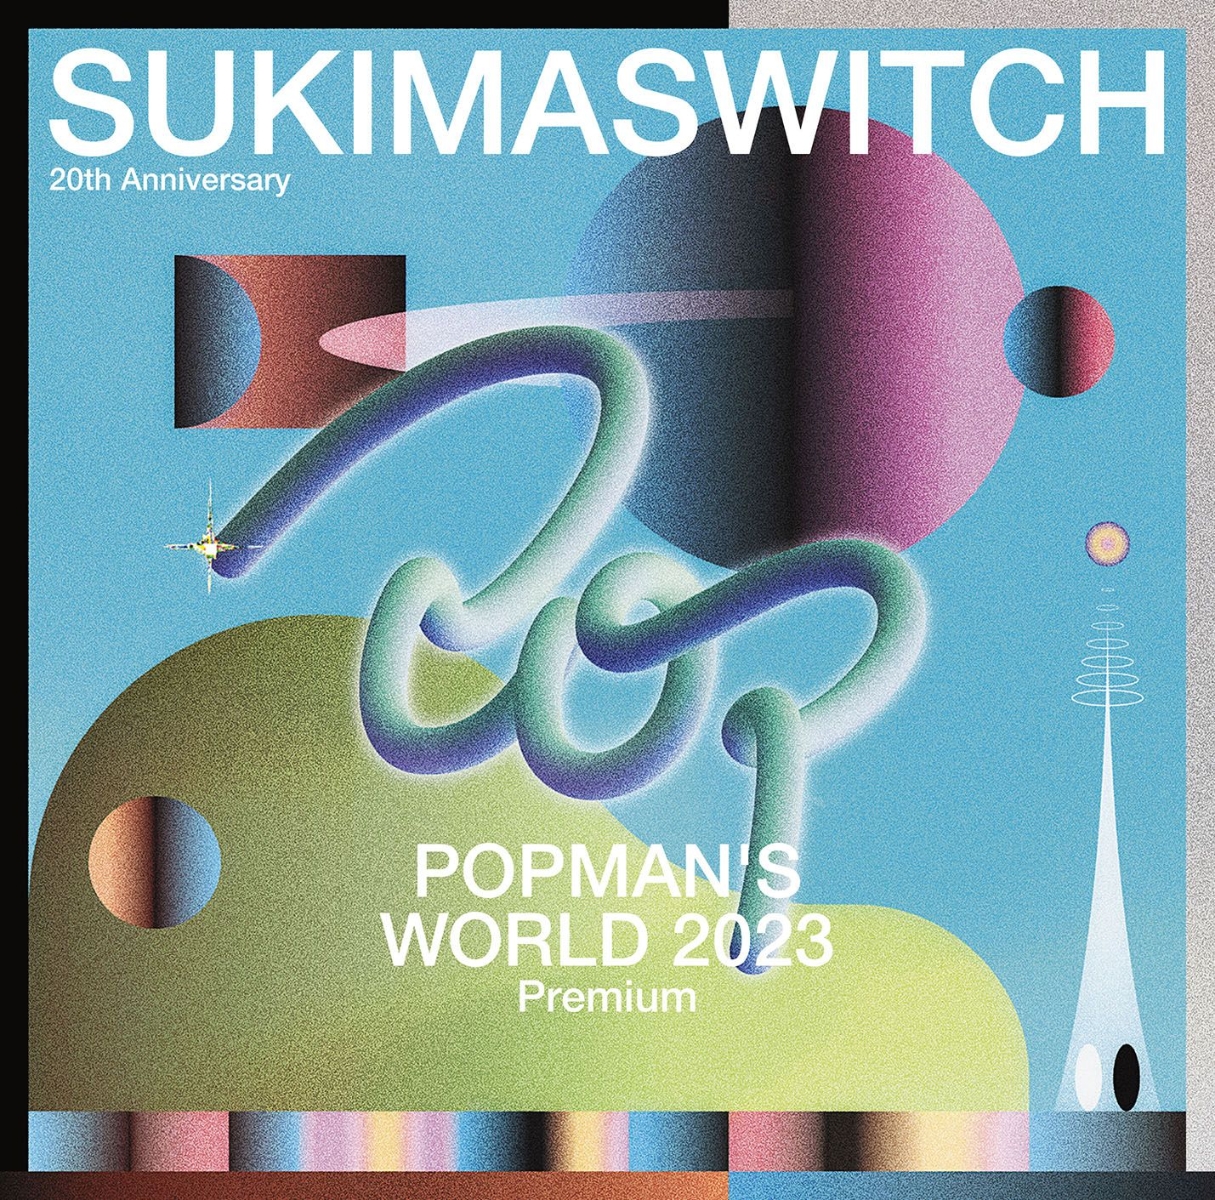 楽天ブックス: スキマスイッチ 20th Anniversary ”POPMAN'S WORLD 2023 